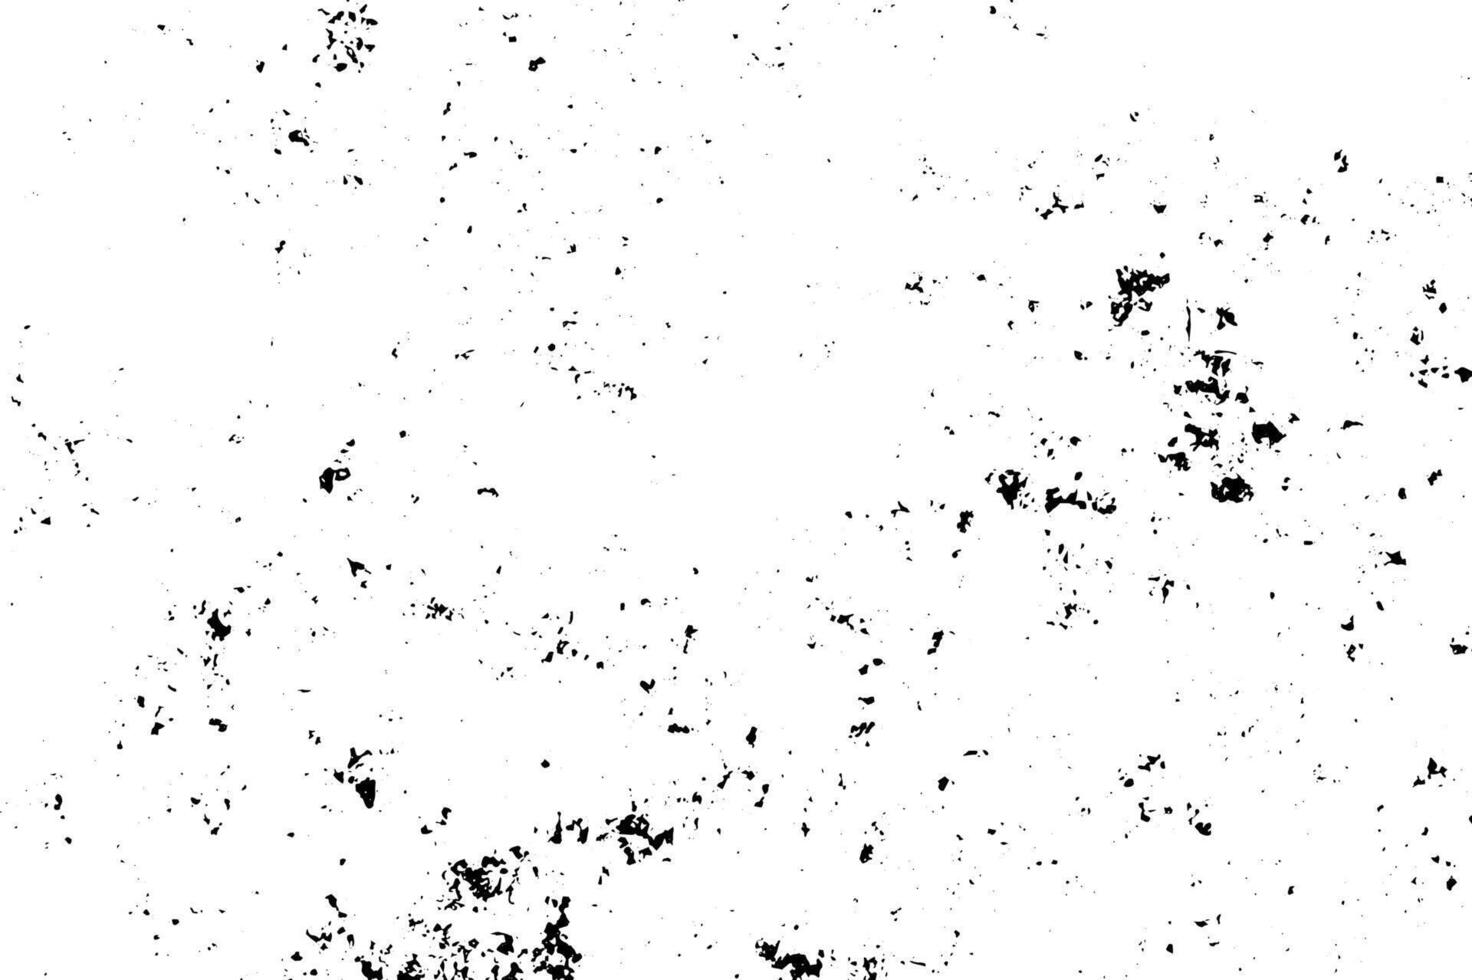 grunge svart och vit textur. abstrakt svartvit bakgrund mönster av sprickor, pommes frites, repor, fläckar, skav. årgång gammal yta vektor